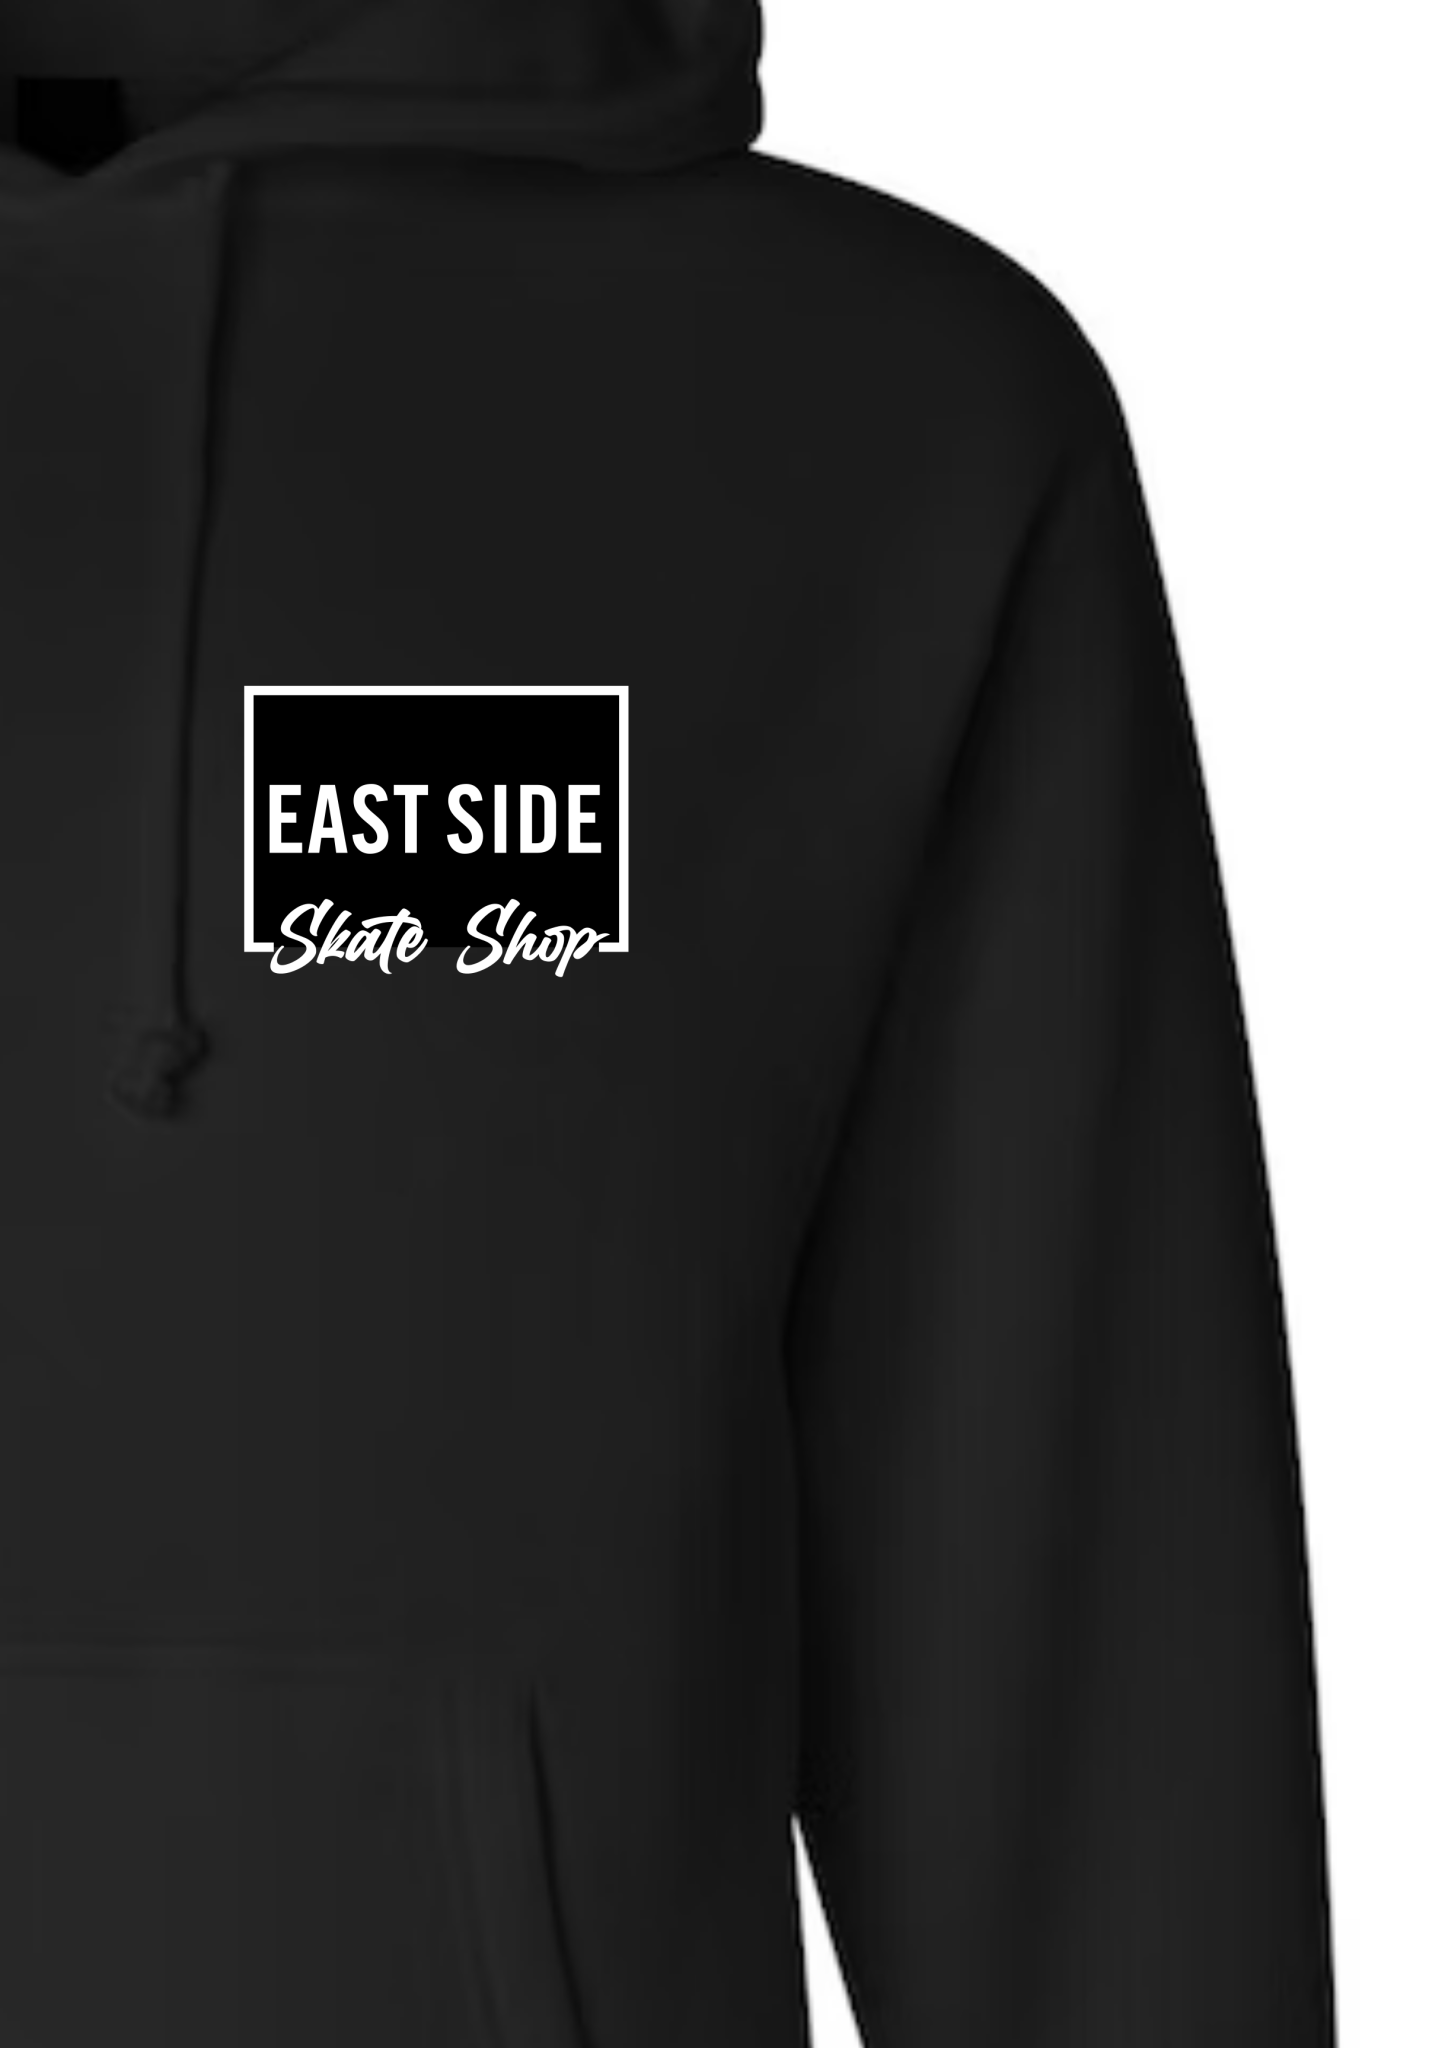 East Side Shop